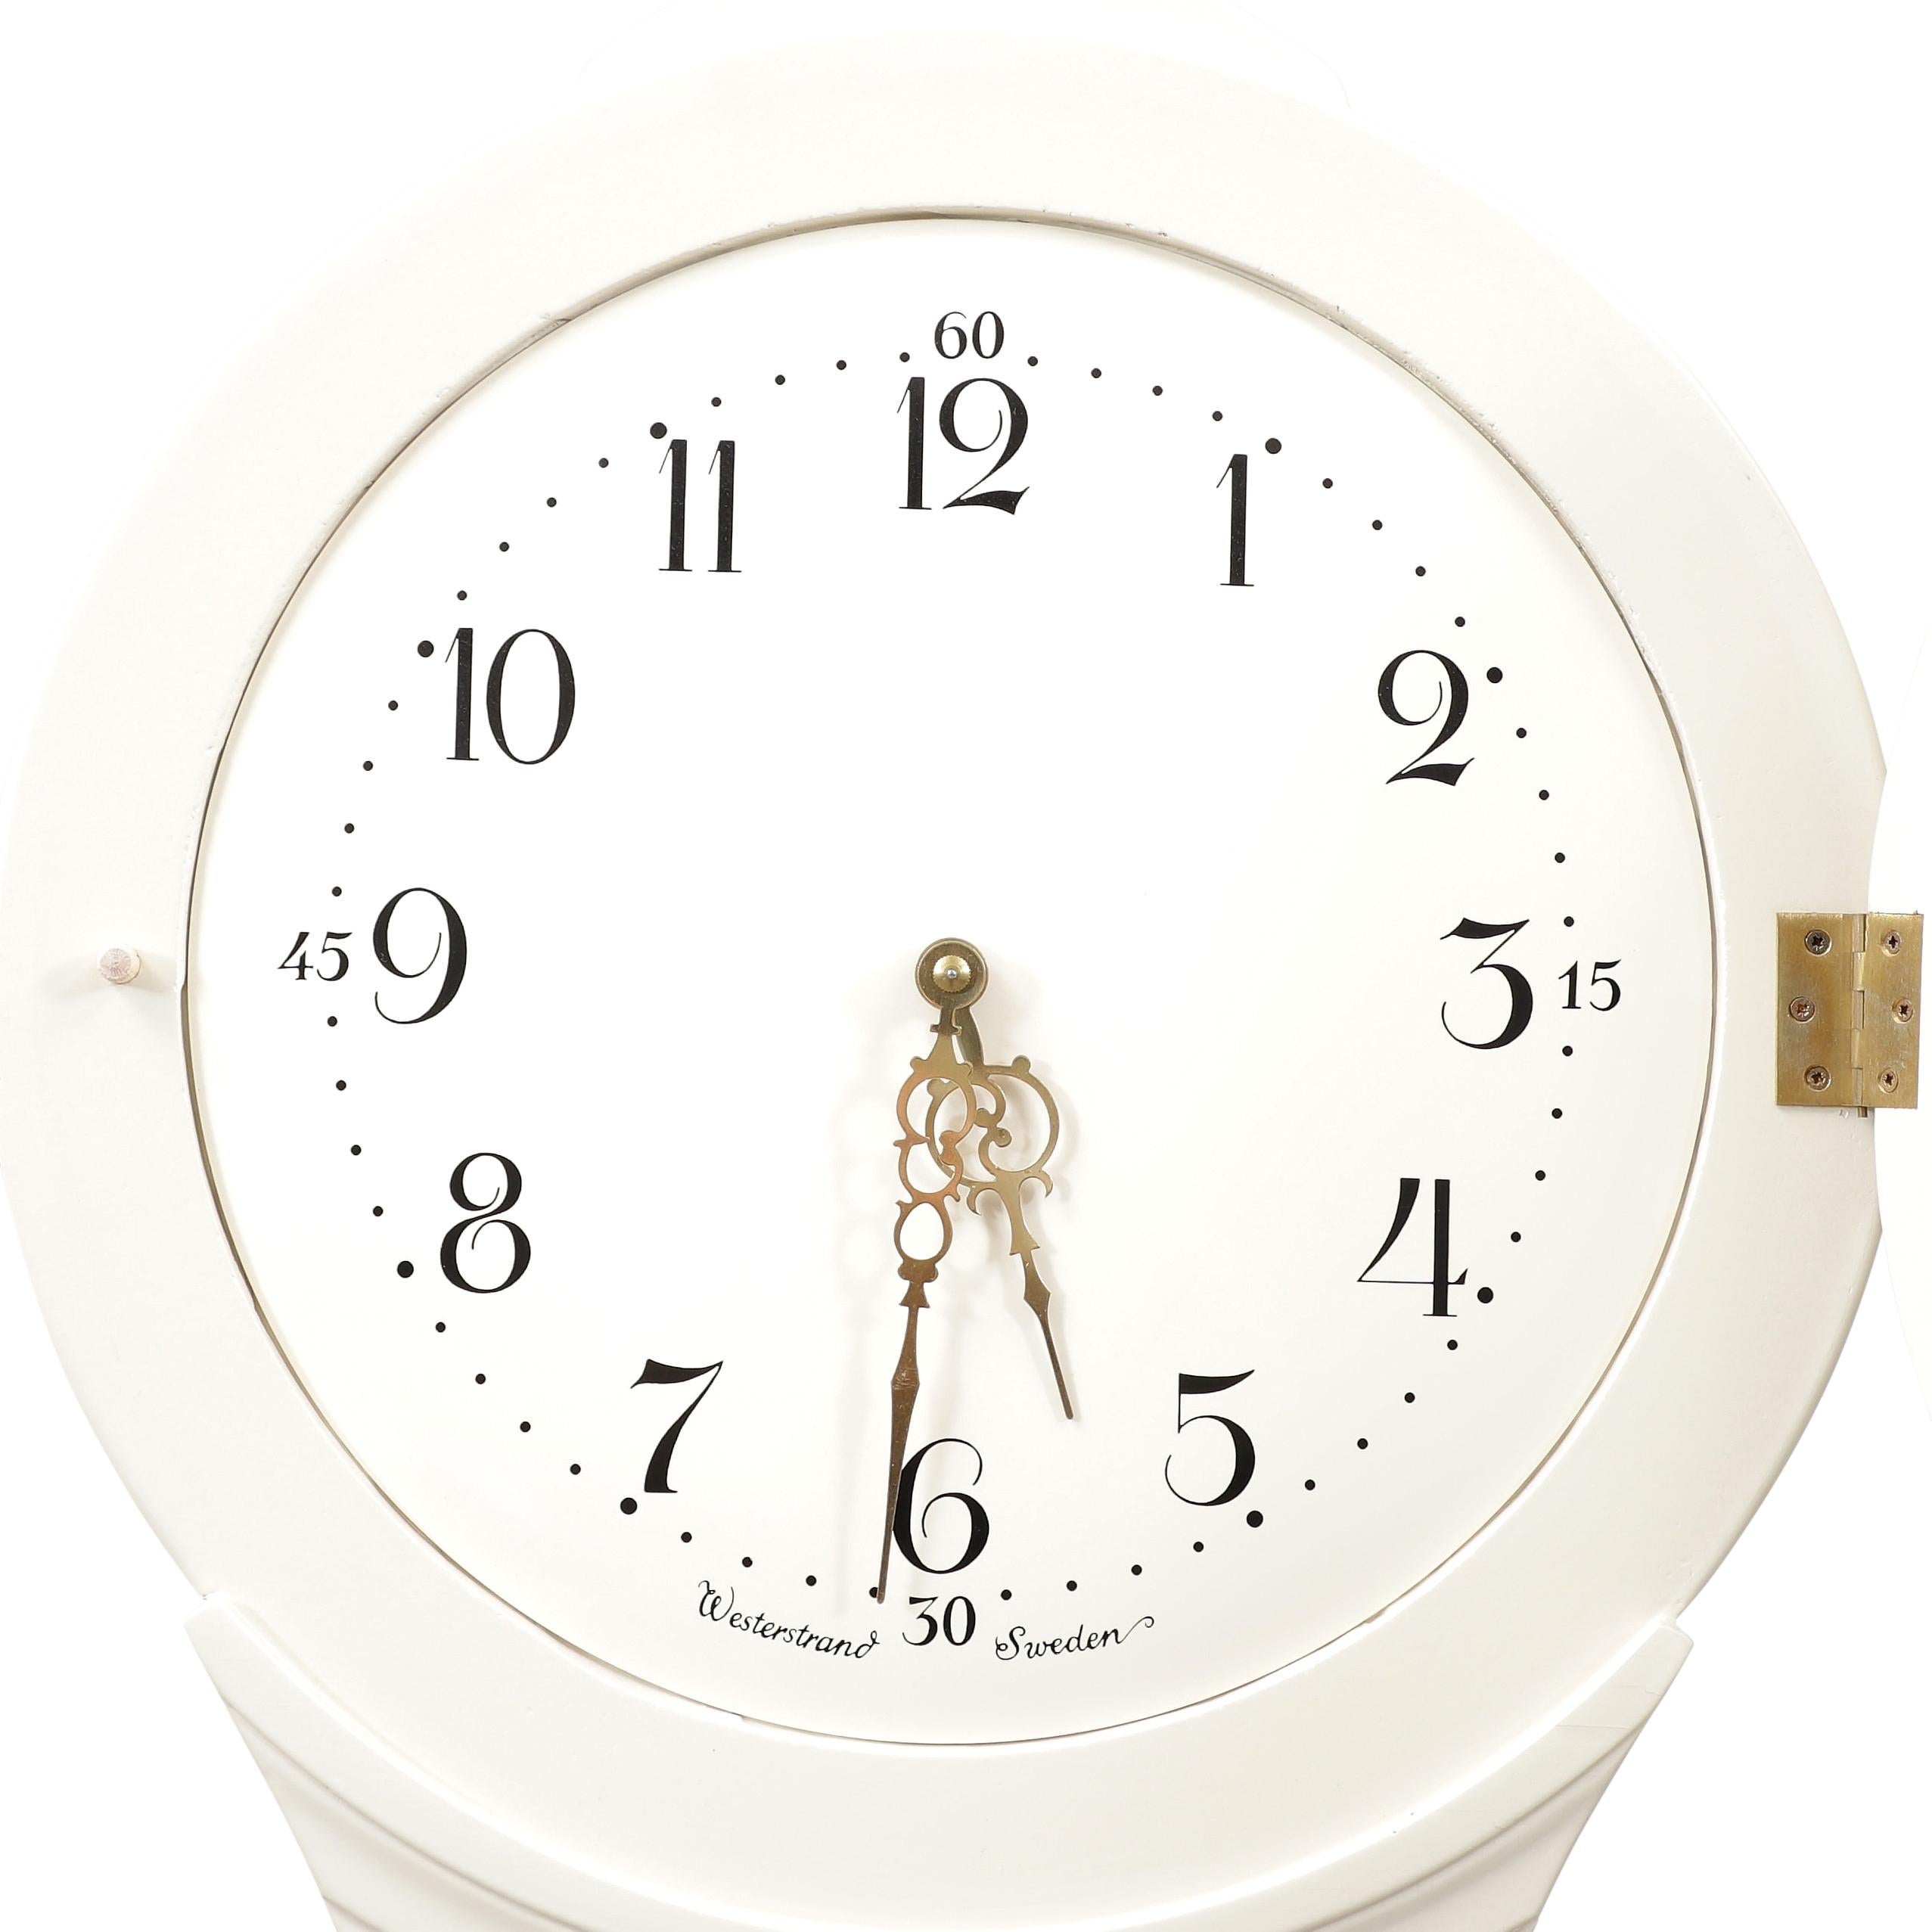 Horloge suédoise Mora des années 1900 avec des détails peints en crème et en or. La couronne est ornée de détails sculptés. Mécanisme d'horlogerie de type Longcase fonctionnant avec un pendule, deux poids et une cloche sonnant l'heure.

Largeur:52cm